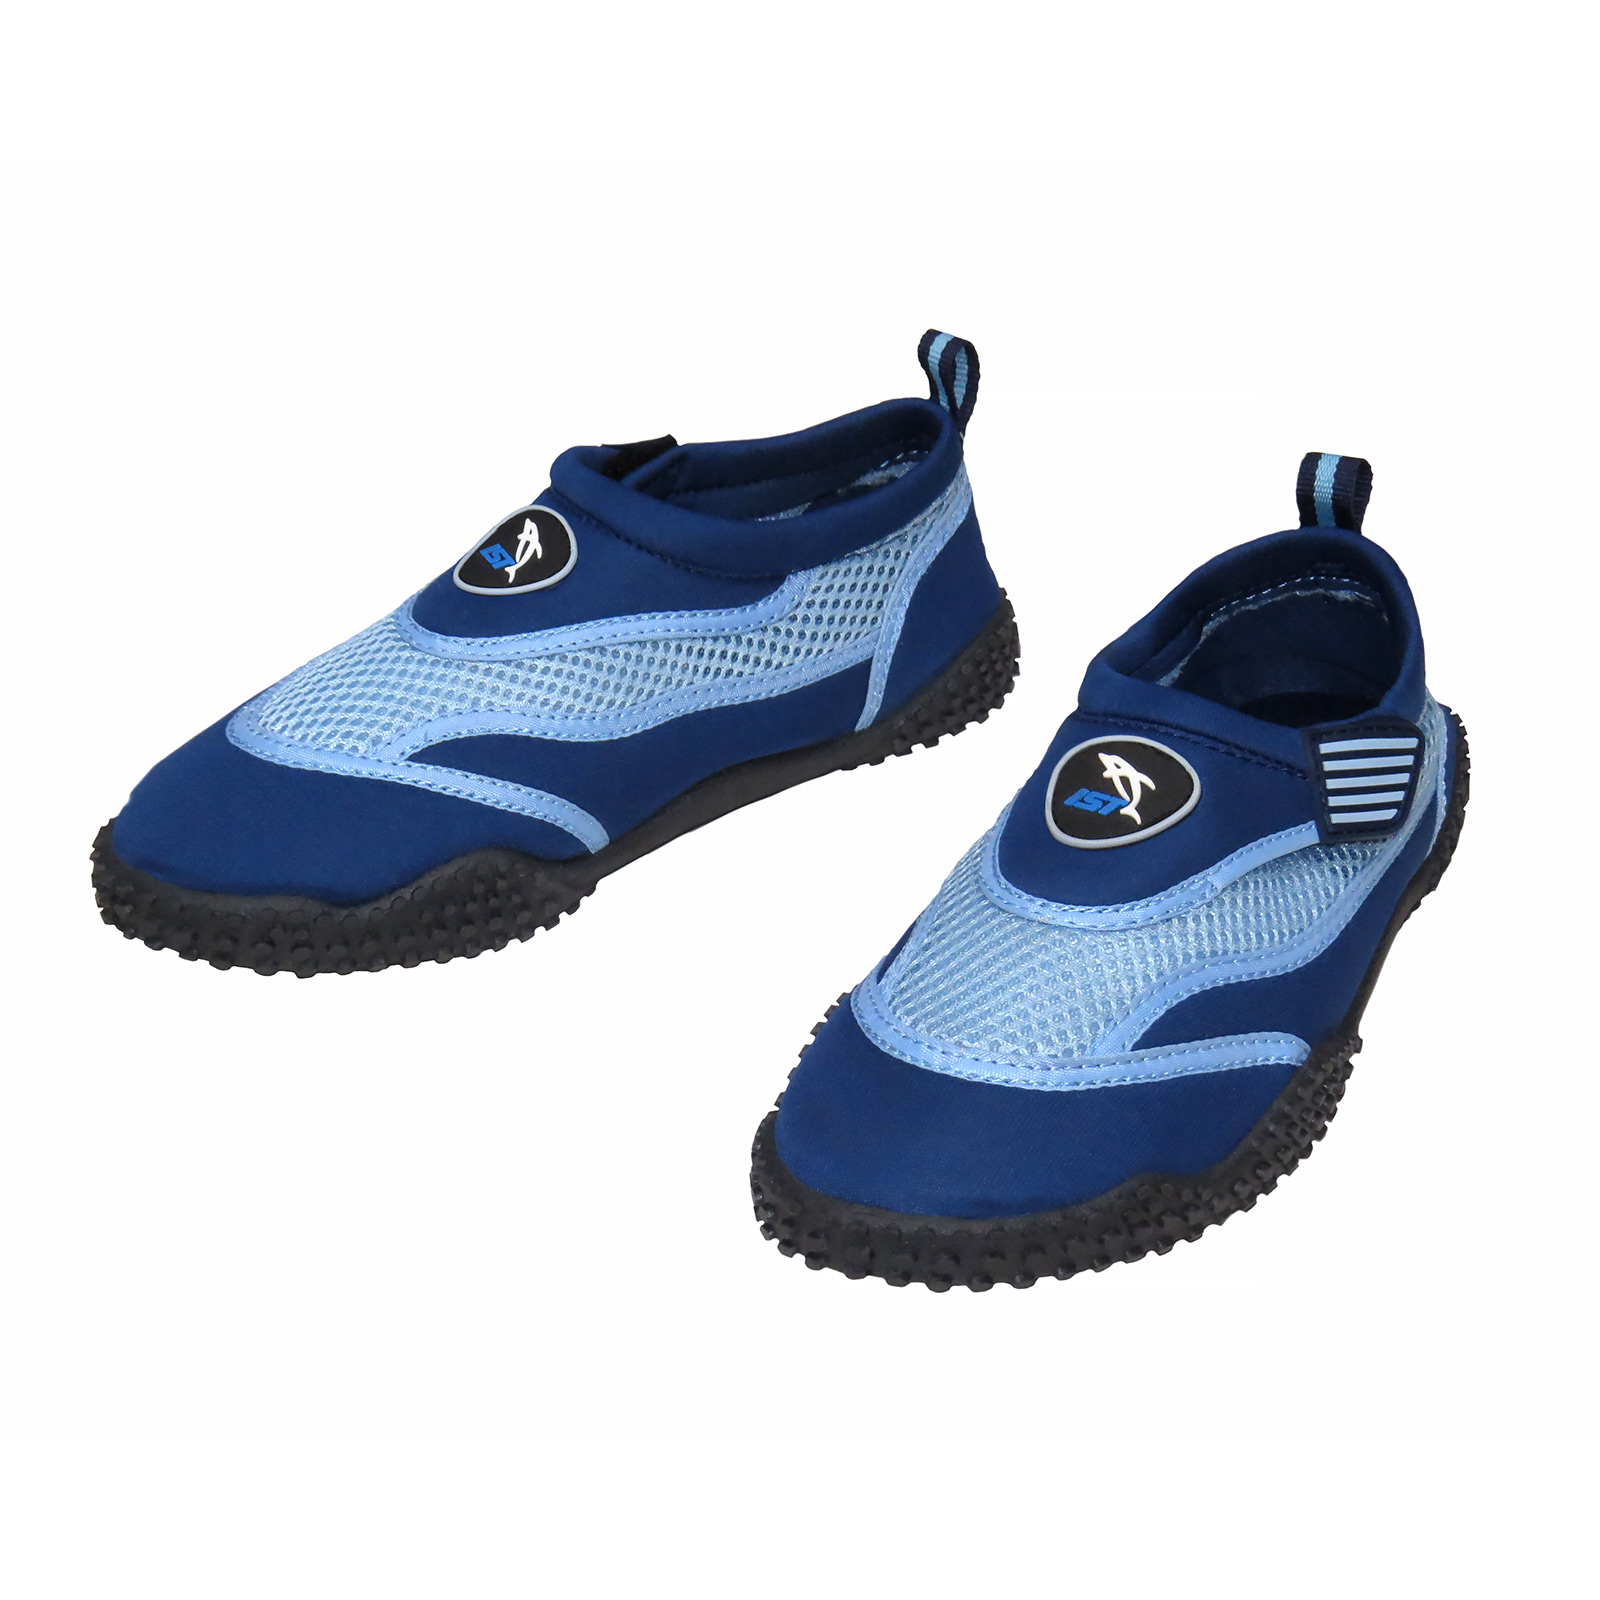 SOCKS :: Aqua Shoes Adult